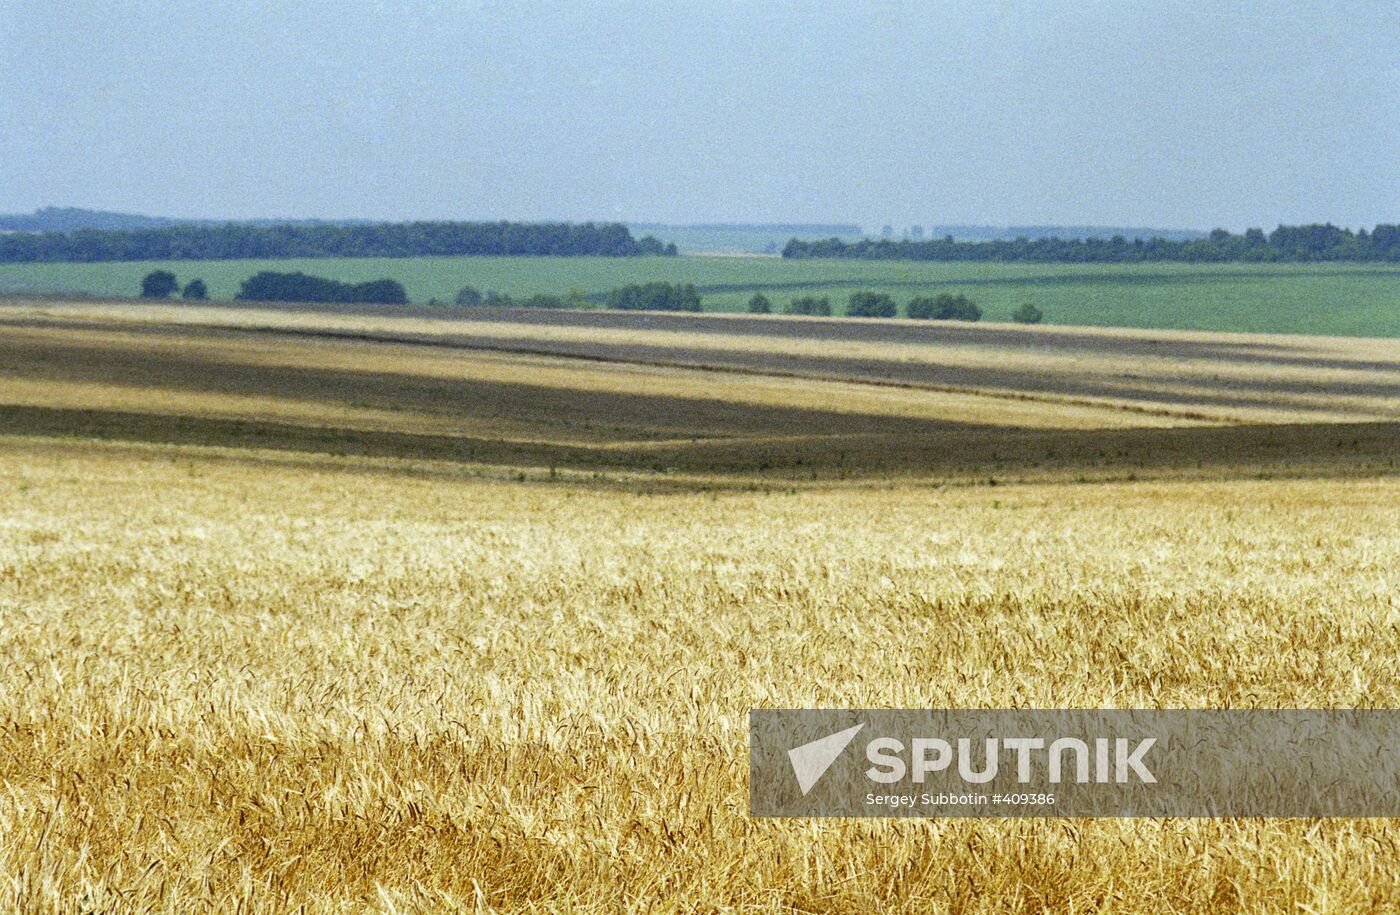 Wheat fields in Russia's Belgorod Region